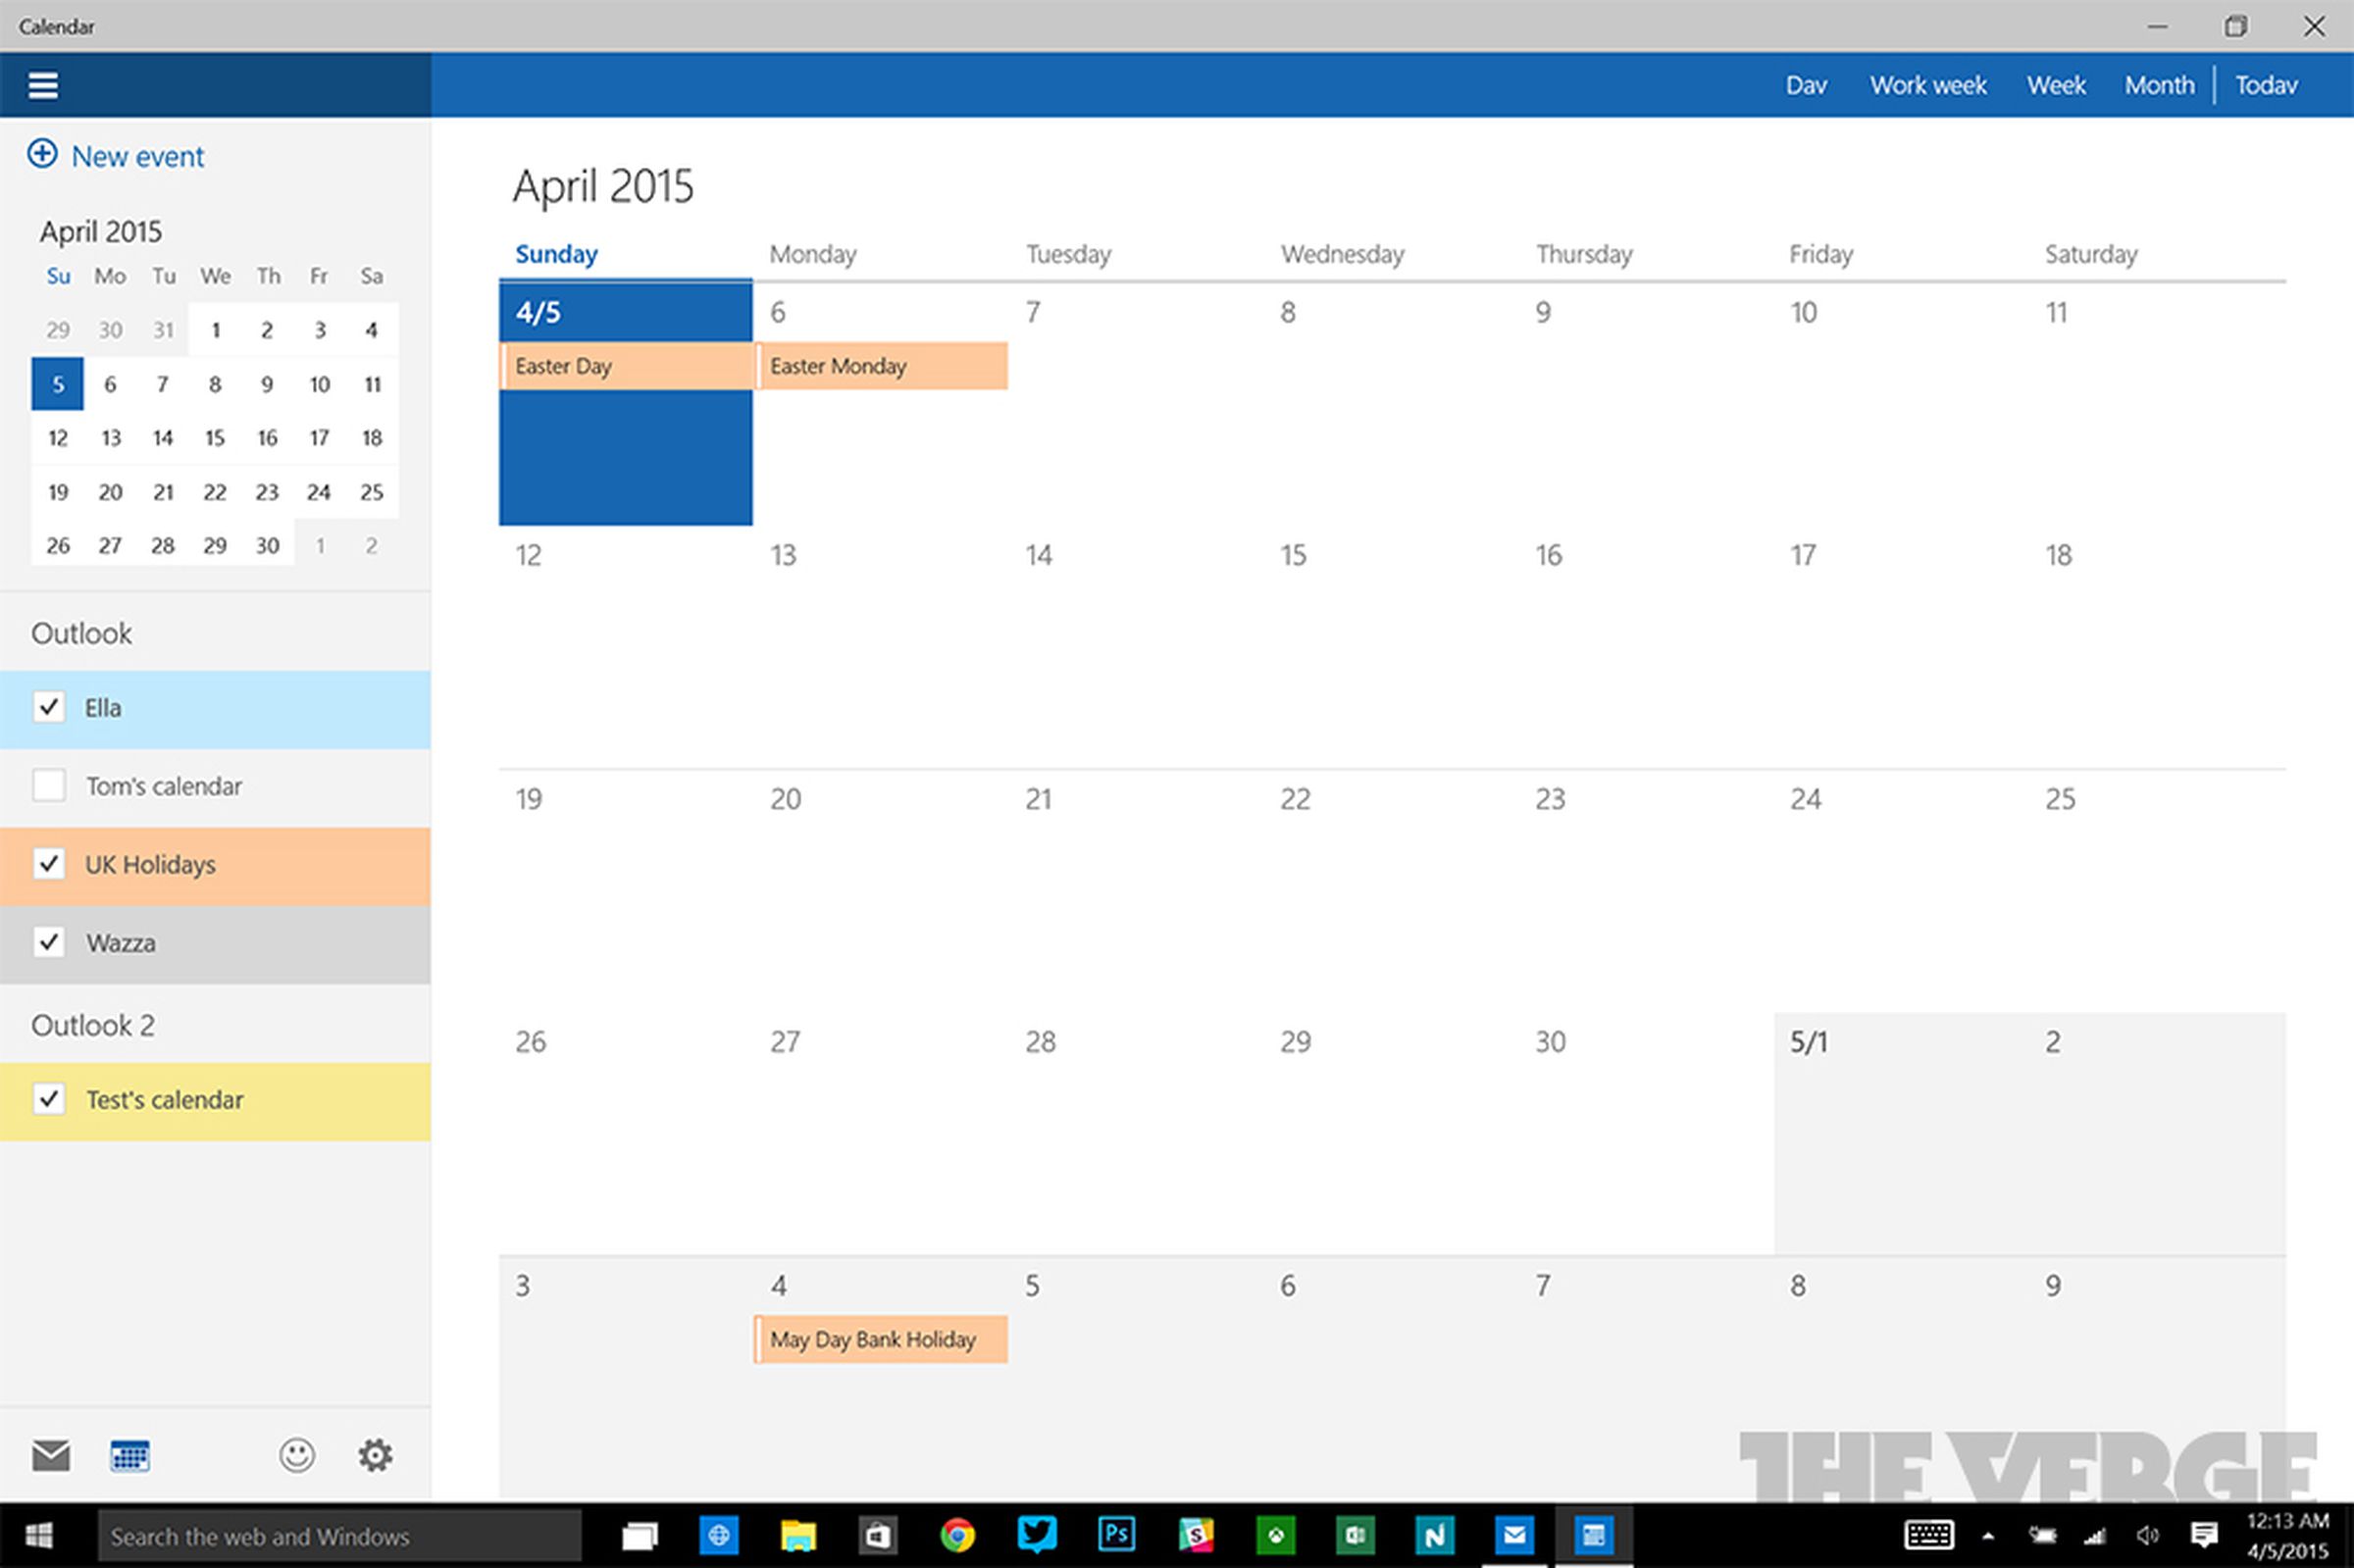 Windows 10 Mail and Calendar apps screenshots